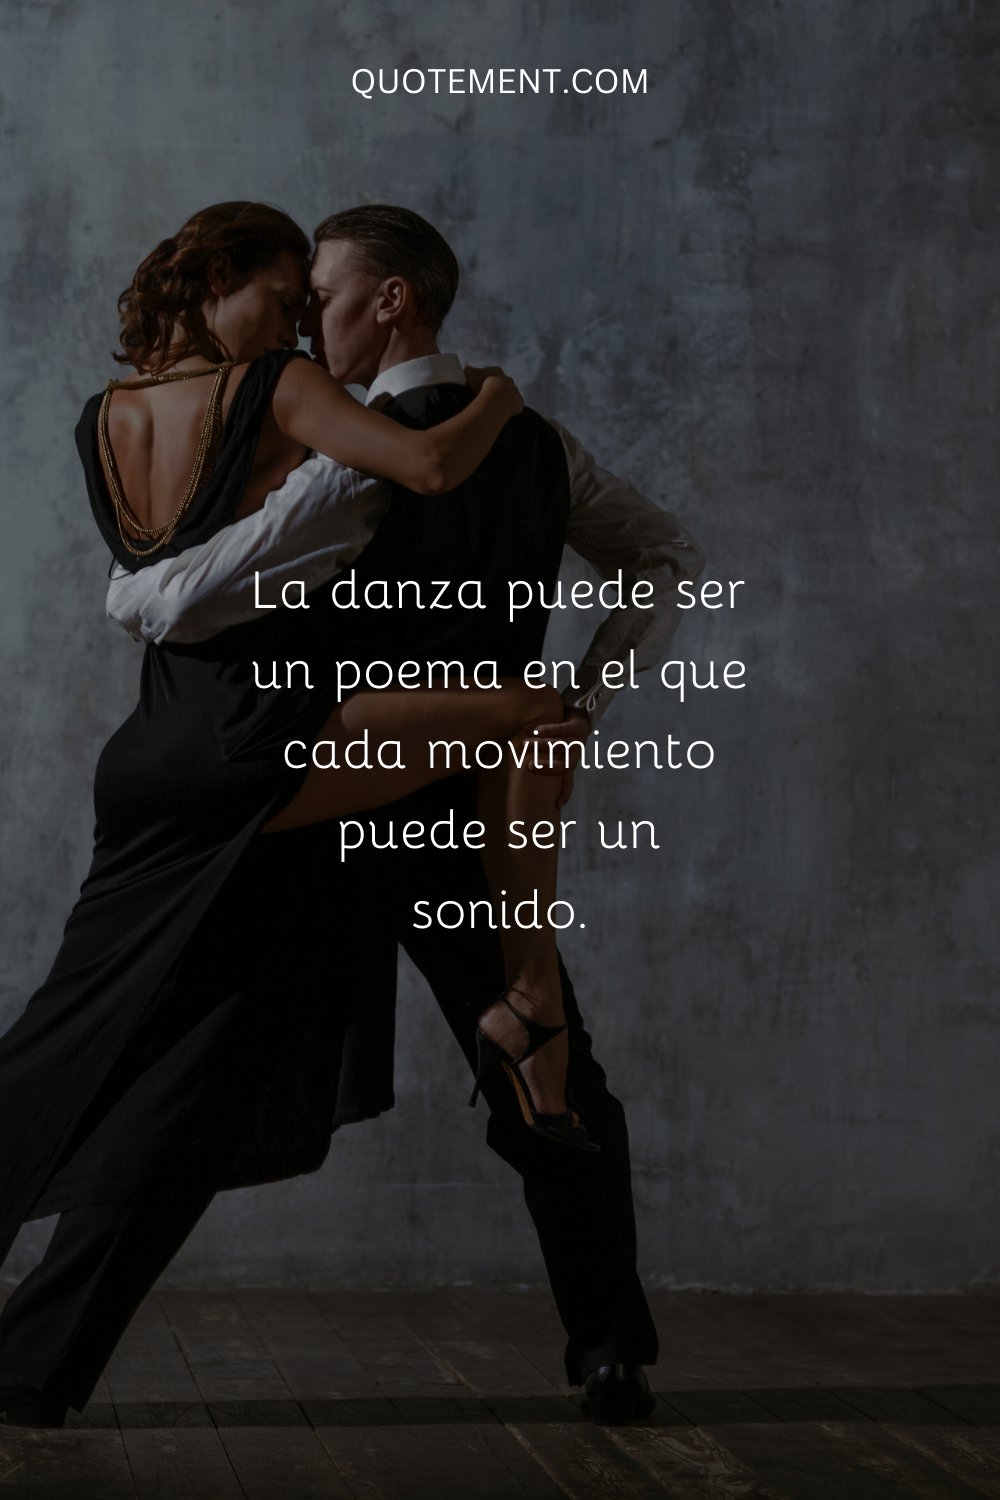 La danza puede ser un poema en el que cada movimiento puede ser un sonido